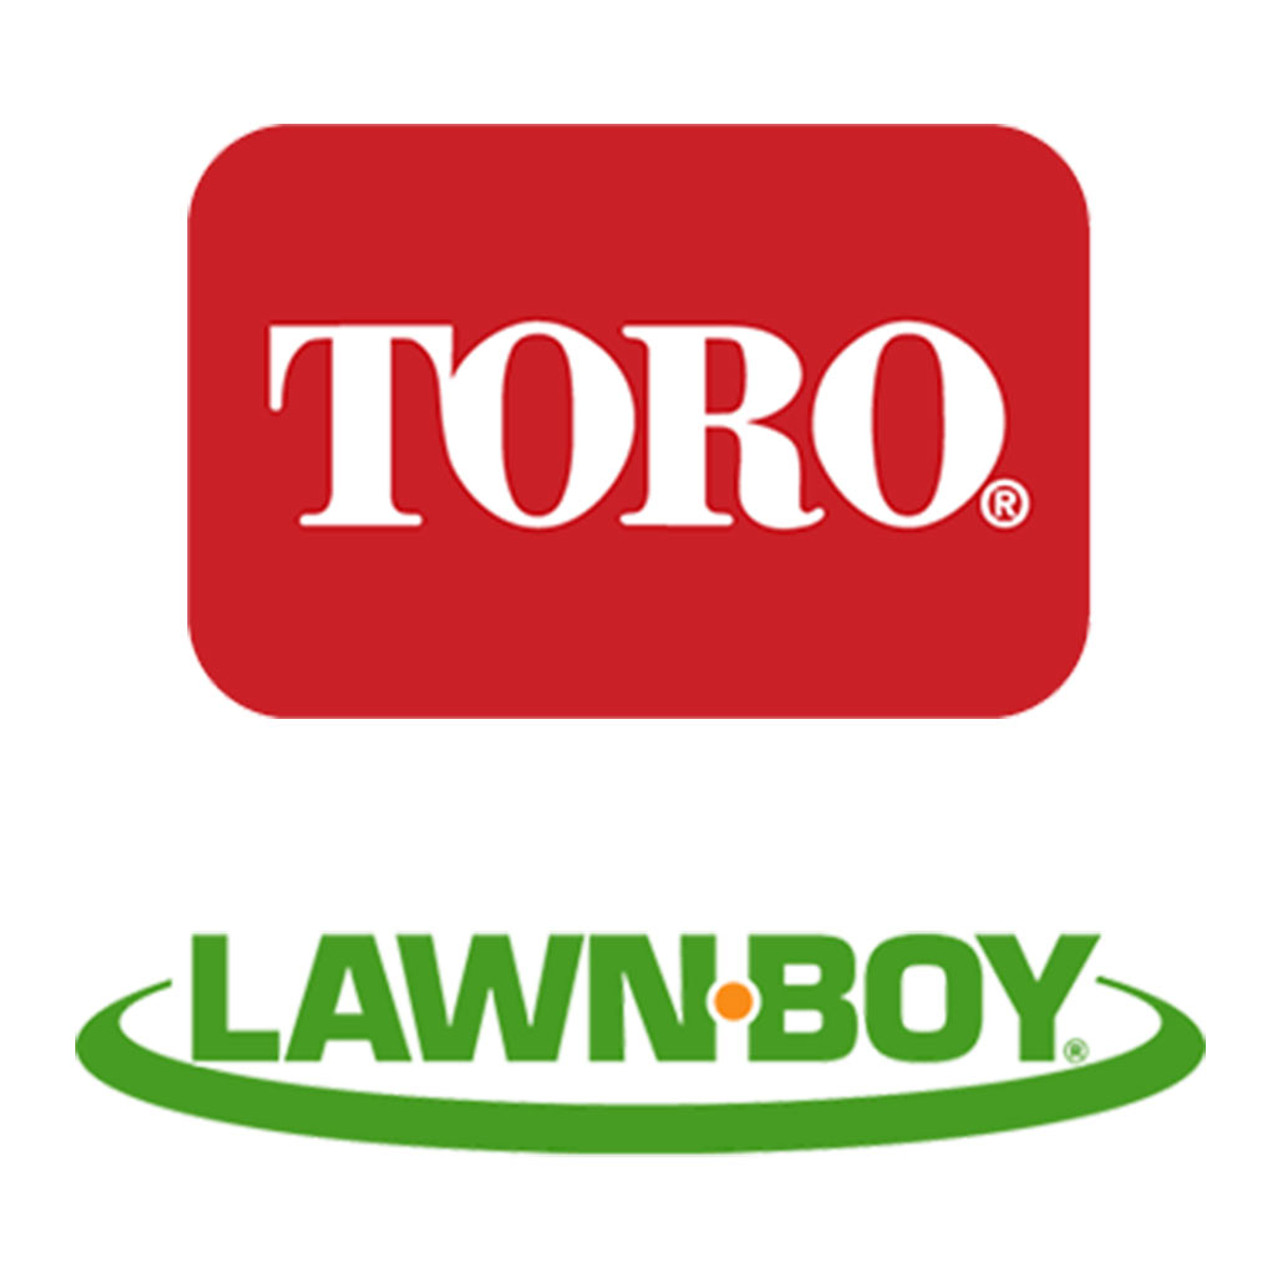 Toro Lawn-Boy 100-2020 Cap-Sealing